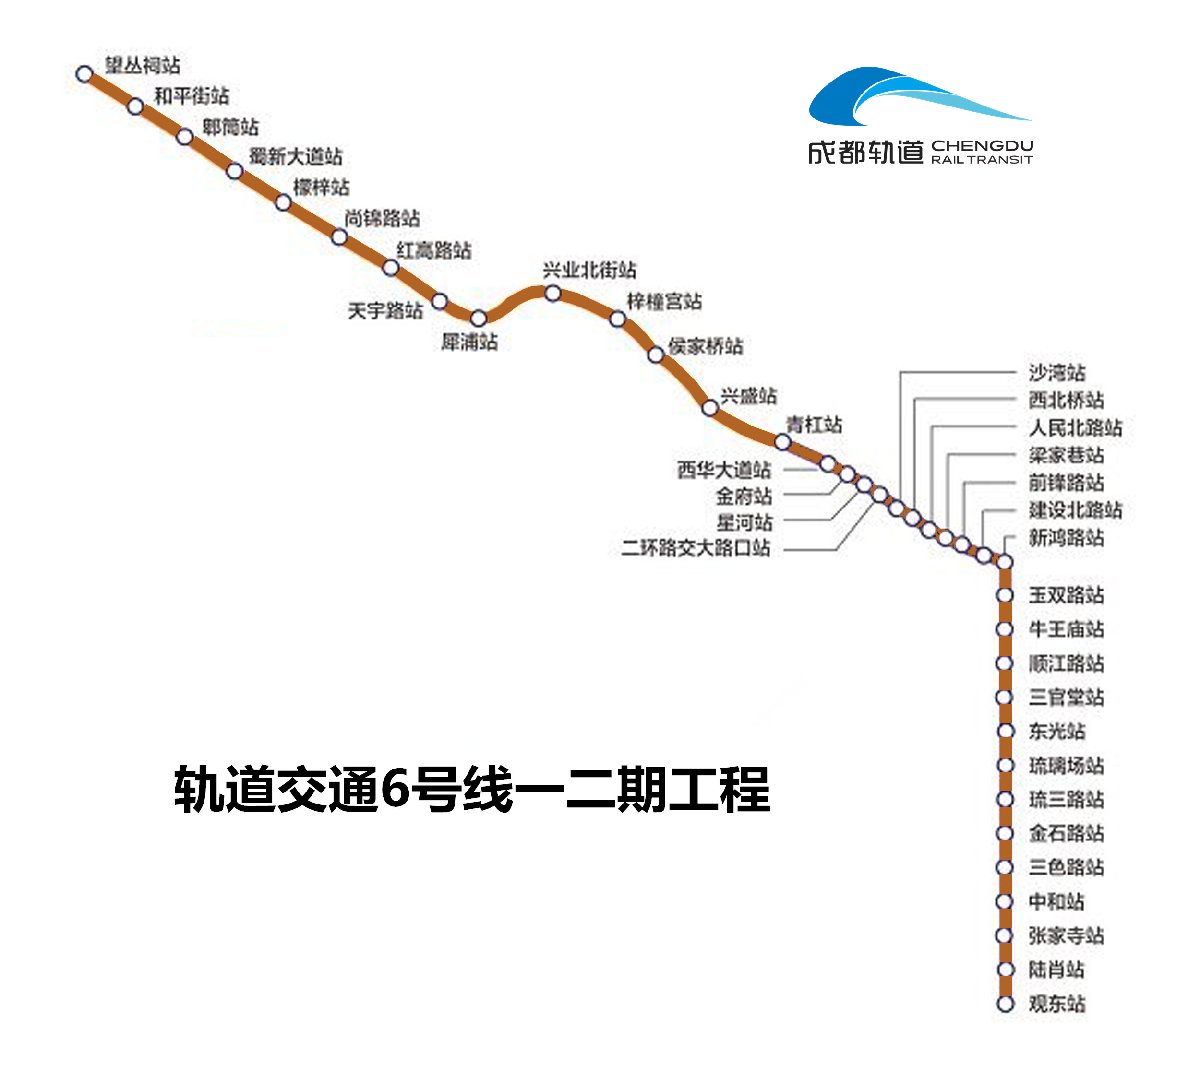 成都地铁6号线一二三期施工进度图（不断更新）